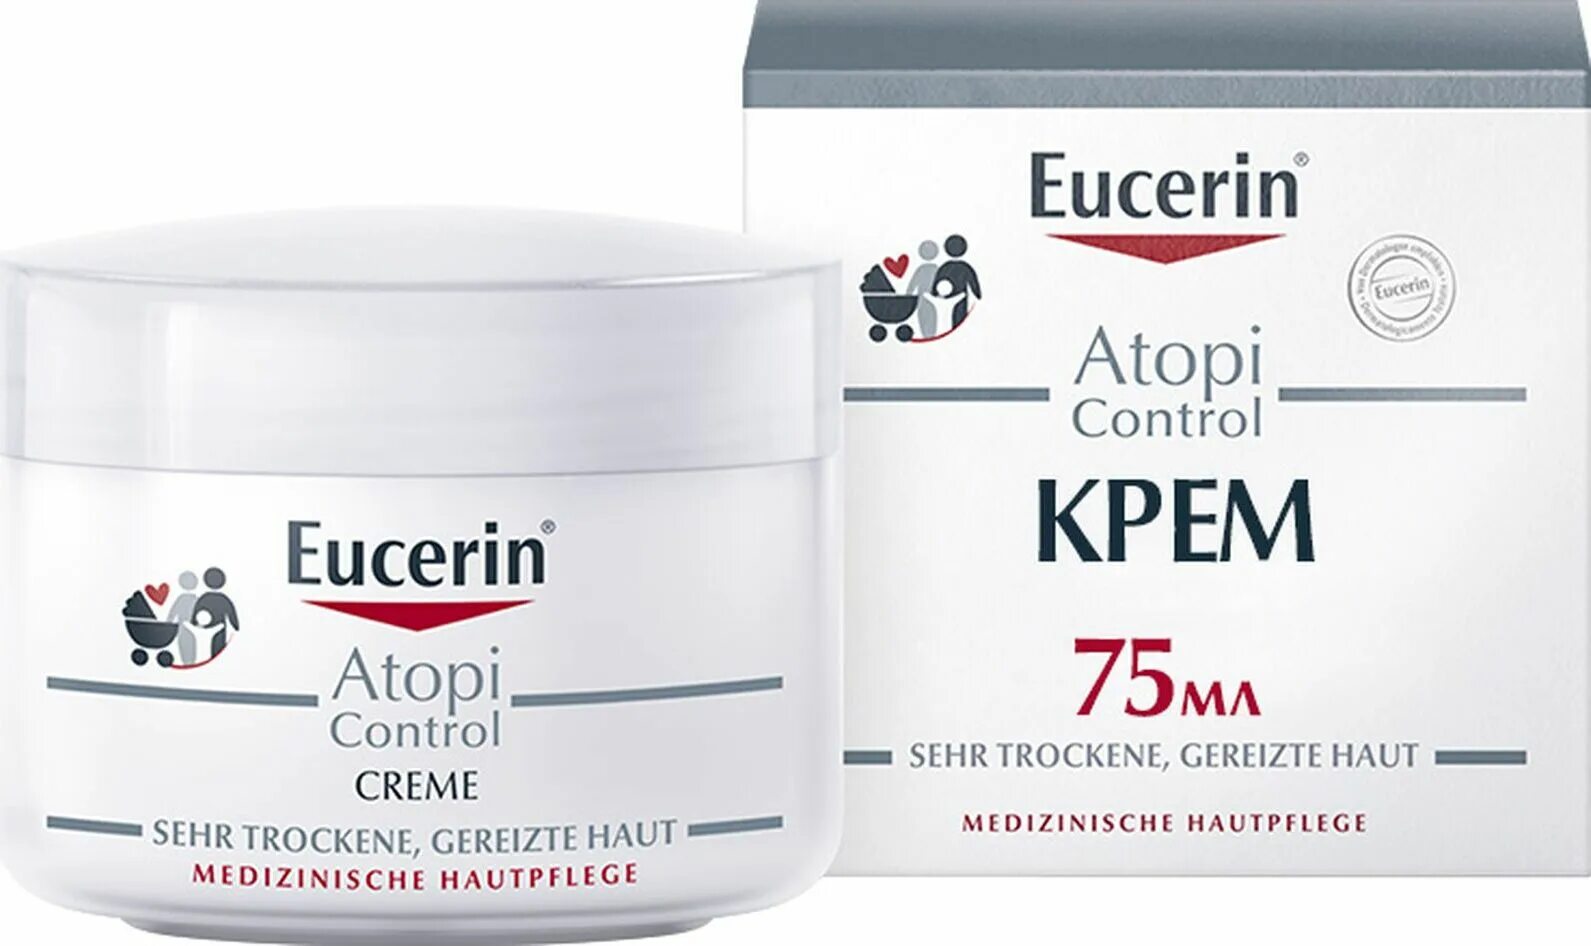 Eucerin ATOPICONTROL крем. Eucerin Atopi Control крем для взрослых детей и младенцев 75мл. Успокаивающий крем Eucerin ATOPICONTROL для атопичной кожи 40 мл. Eucerin Atopi Control очищающее масло для душа 400 мл. Atopi control